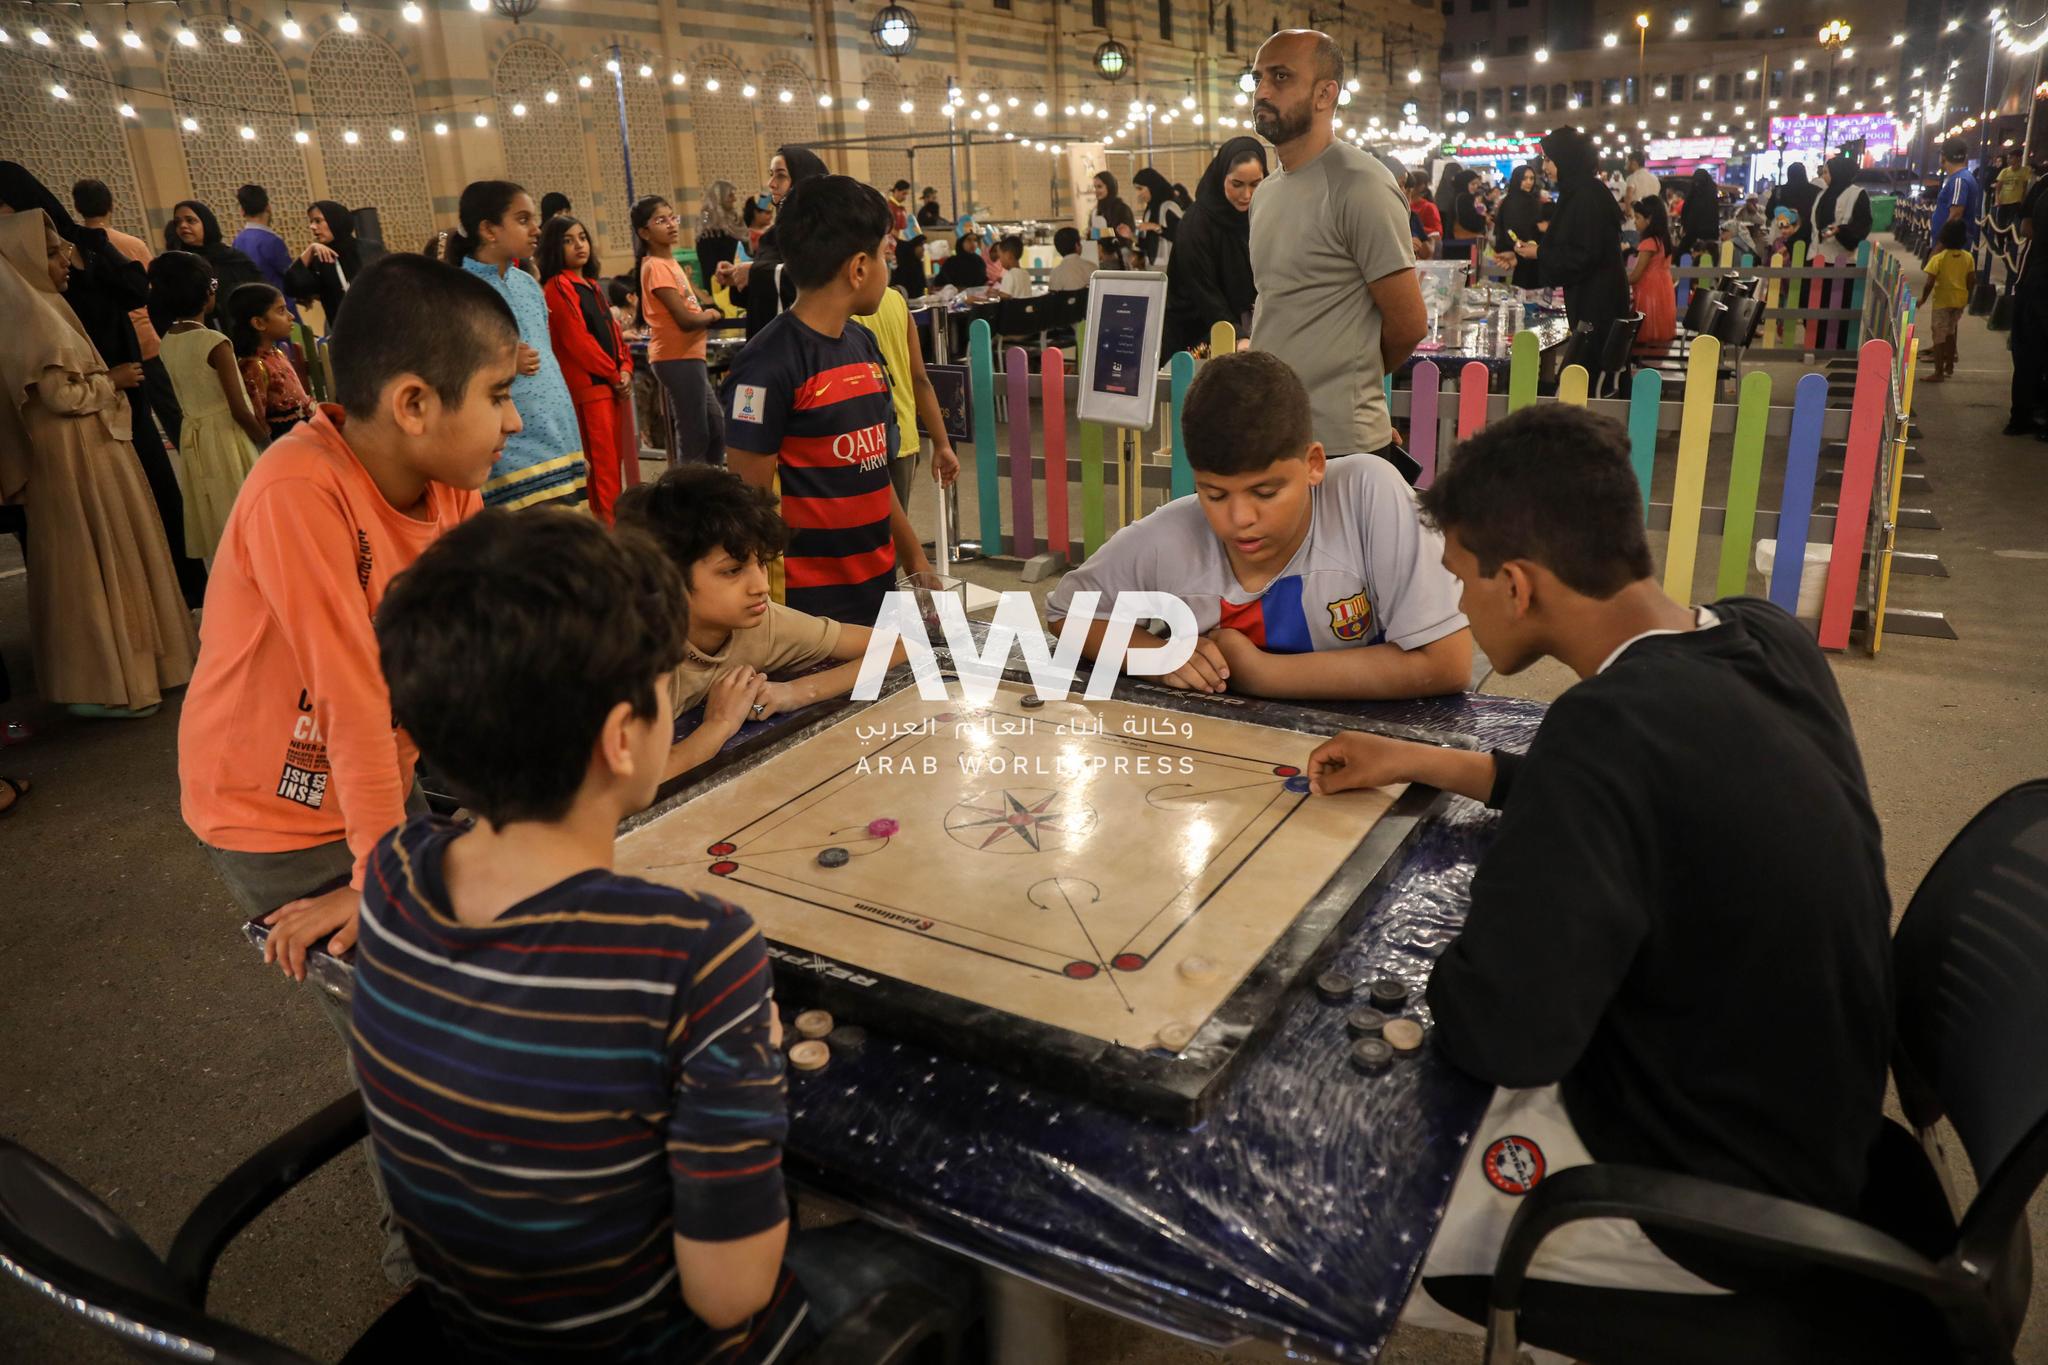 أطفال من أعمار مختلفة يستمتعون بألعاب ترفيهية ضمن فعالية "لمة رمضانية" في متحف الشارقة للحضارة الإسلامية بدولة الإمارات